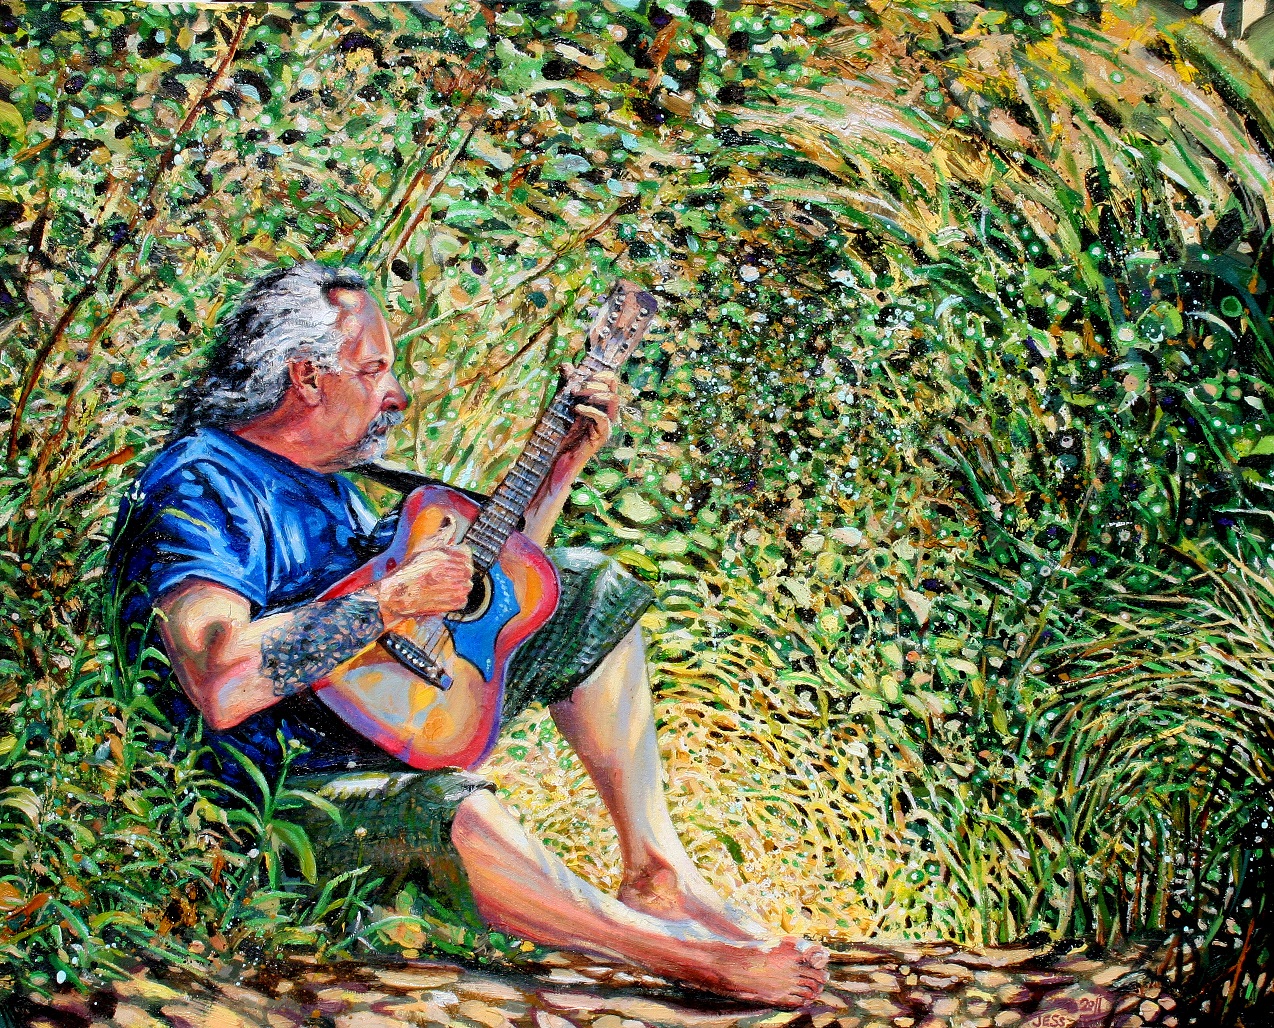 Grandpa Jimmy, oil on canvas, 24x30 in. Jessica Siemens 2011